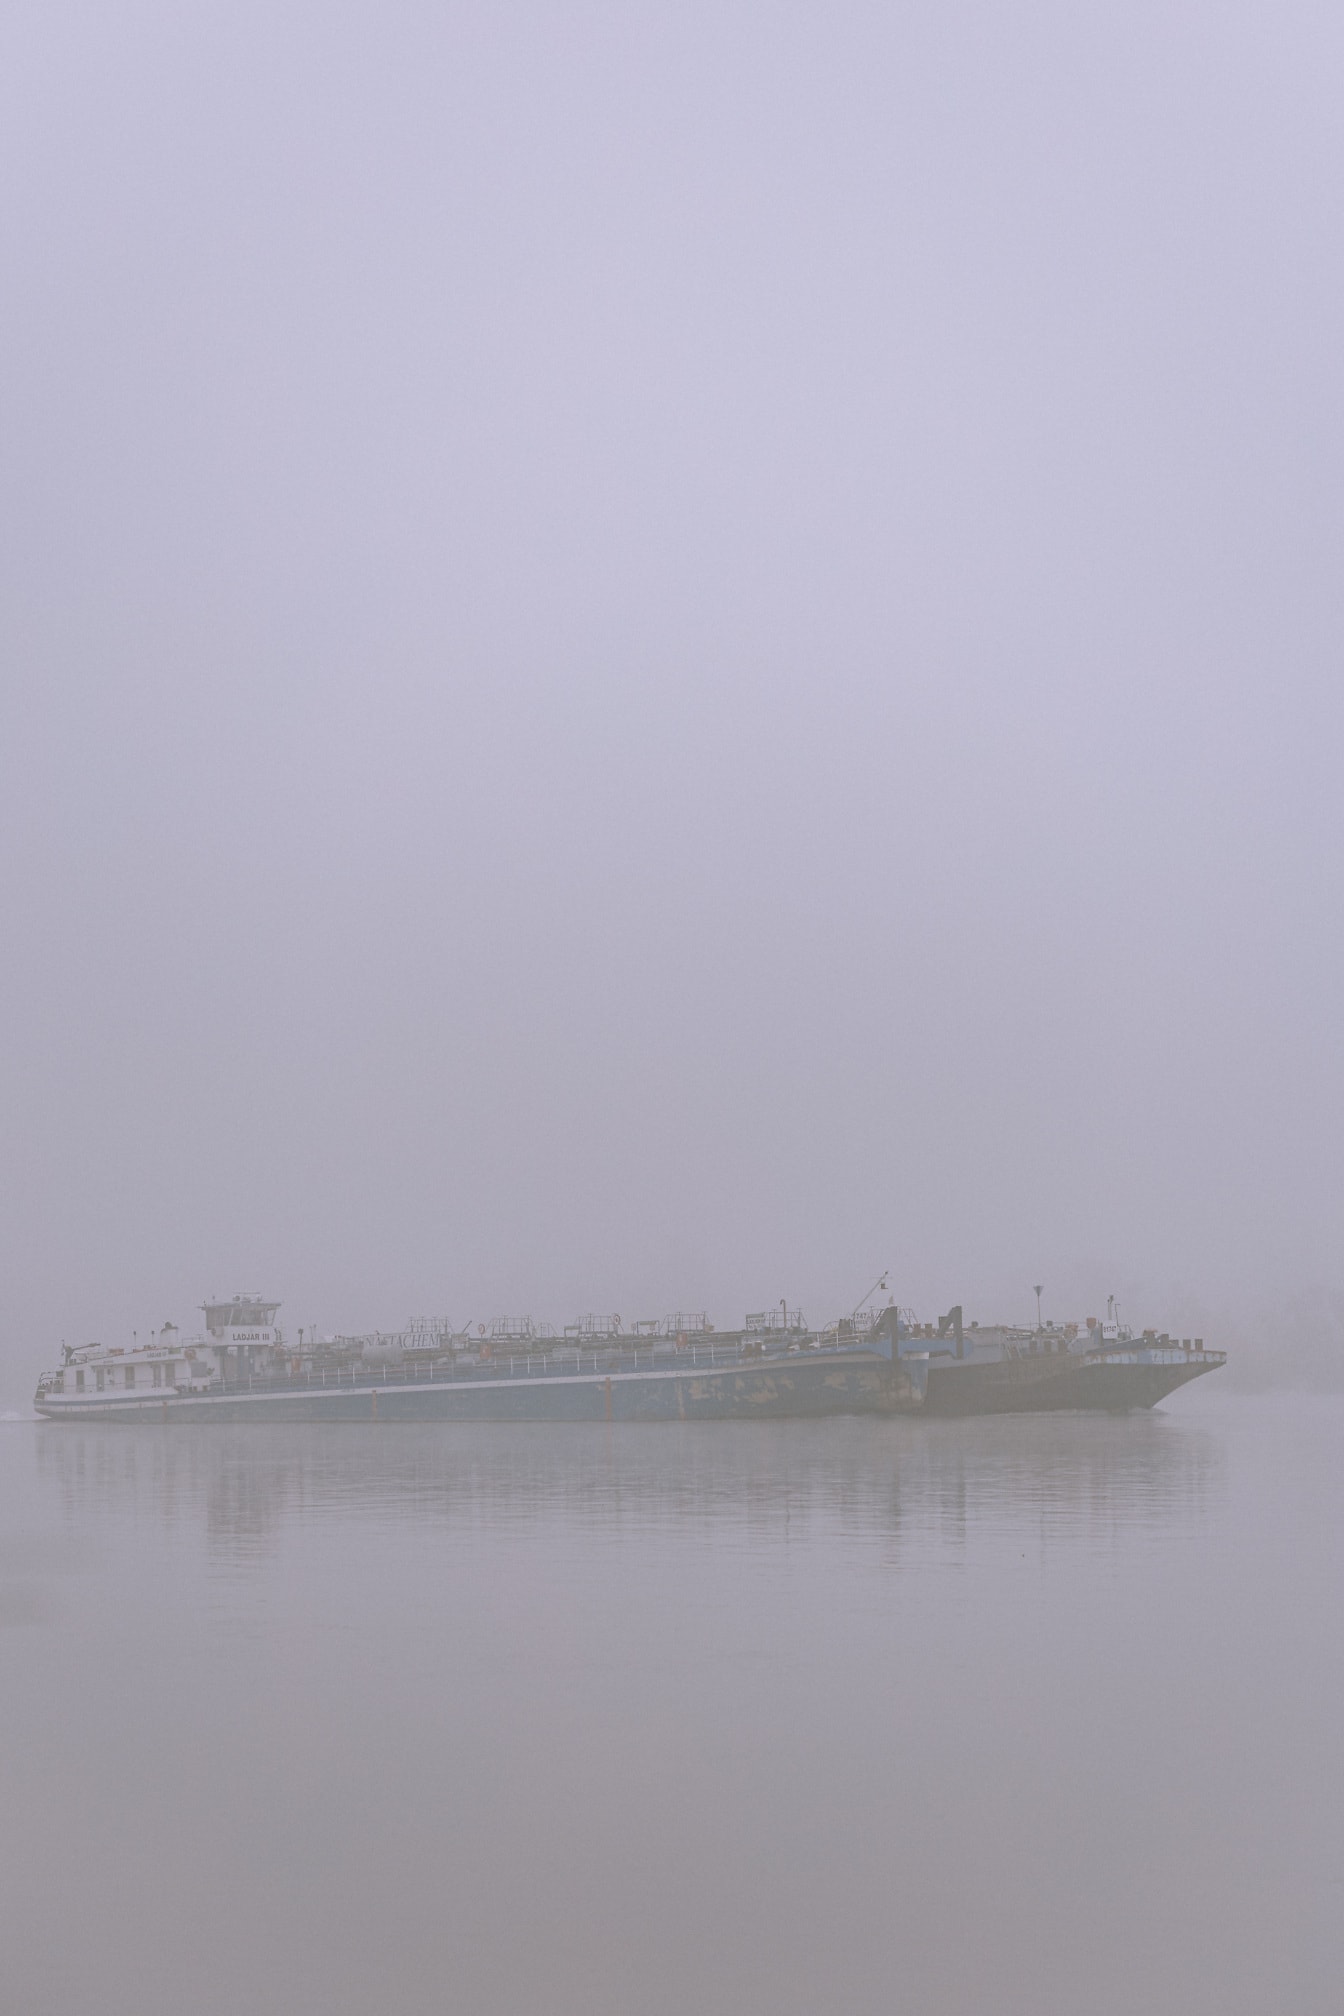 Kontur av pråmlastfartyg i dimma på floden